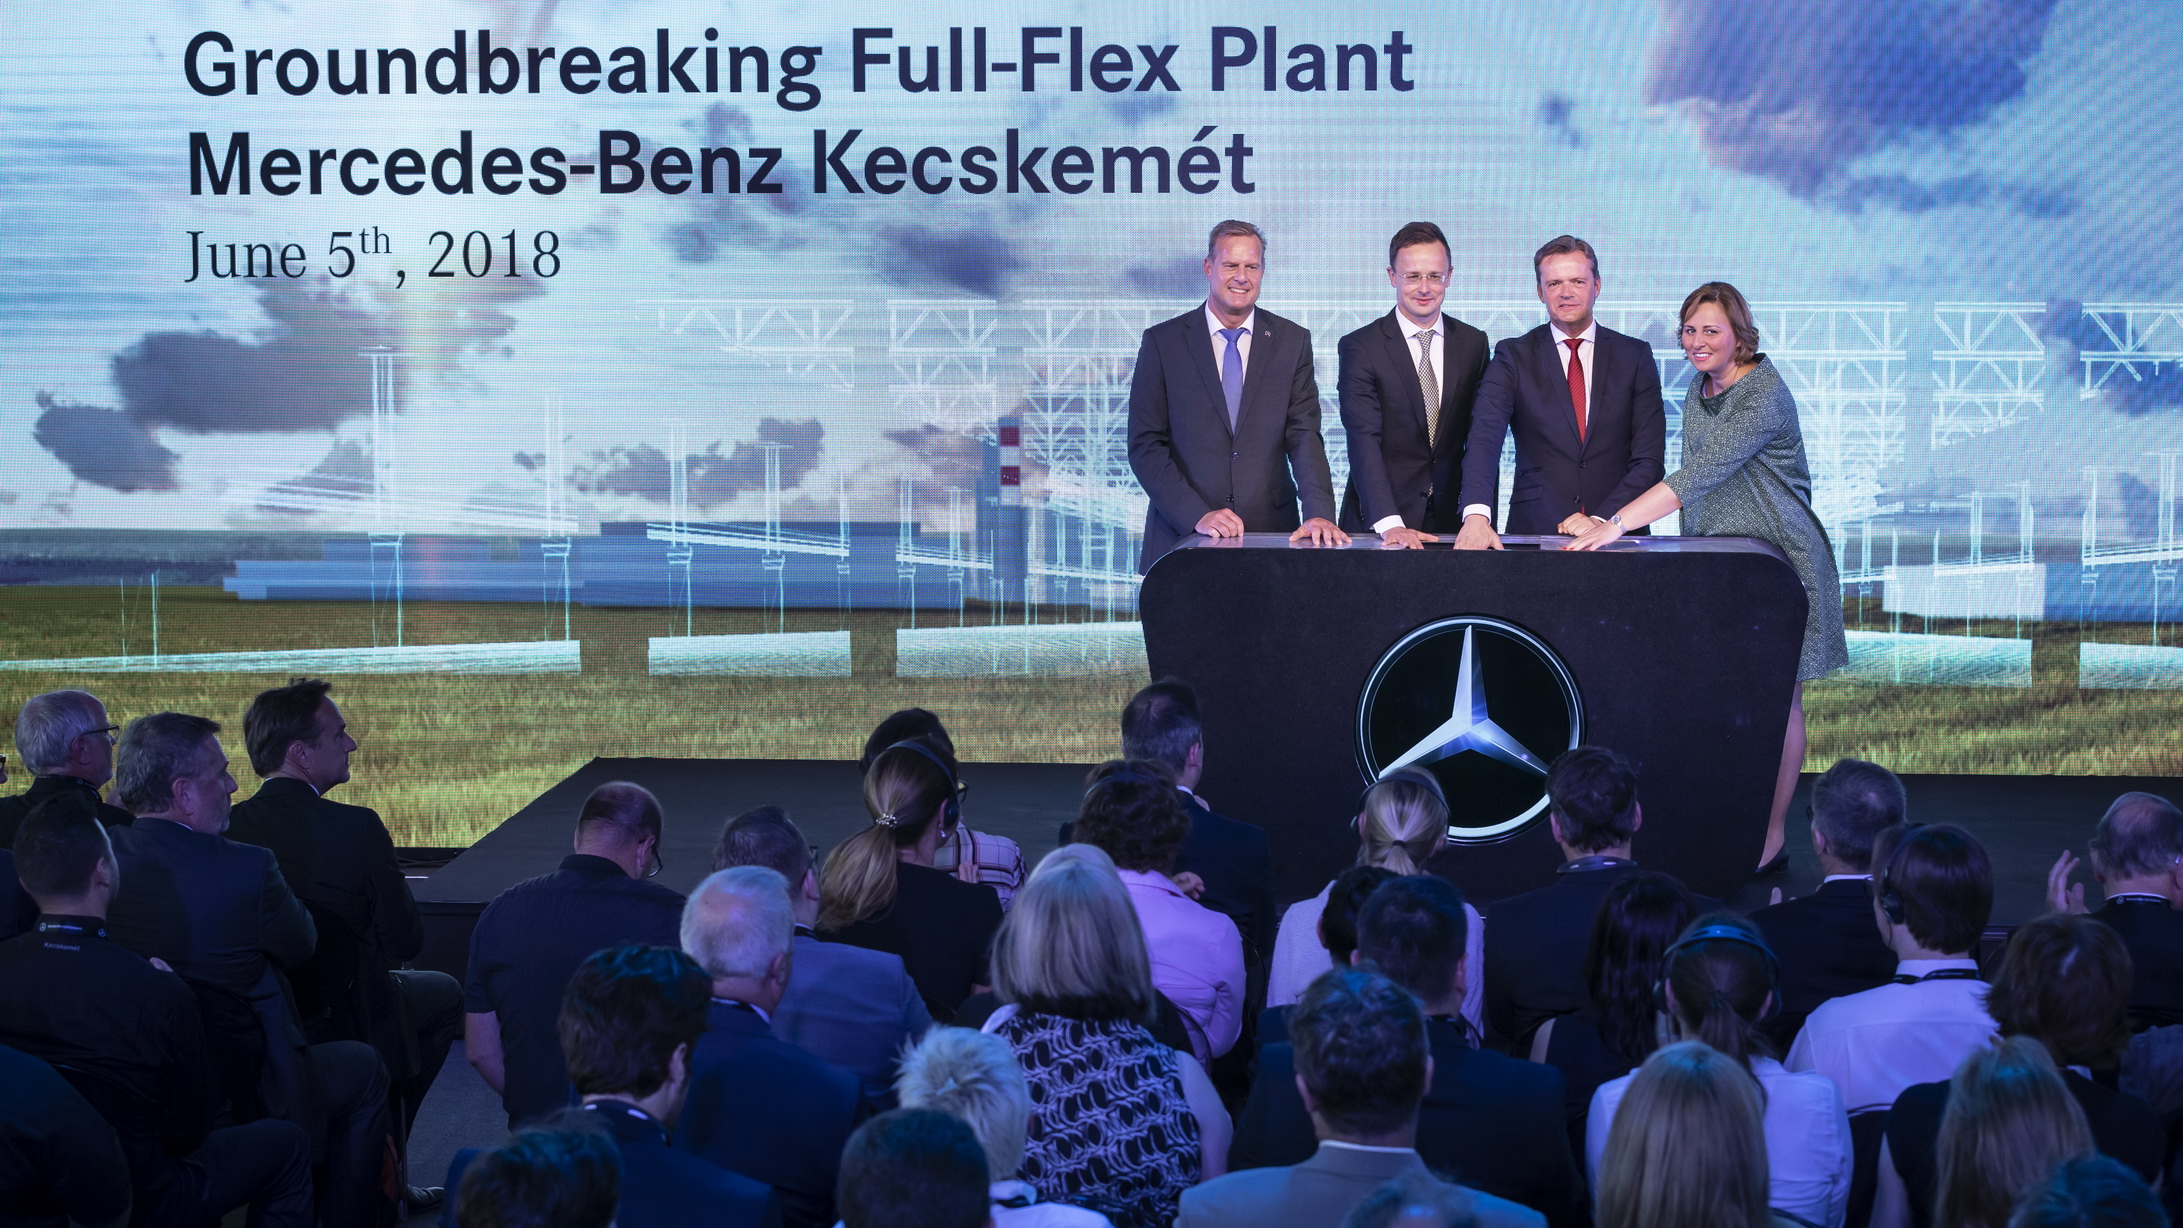 Grundsteinlegung für erstes Full-Flex Werk von Mercedes-Benz Cars // Groundbreaking for first Full-Flex Plant of Mercedes-Benz Cars